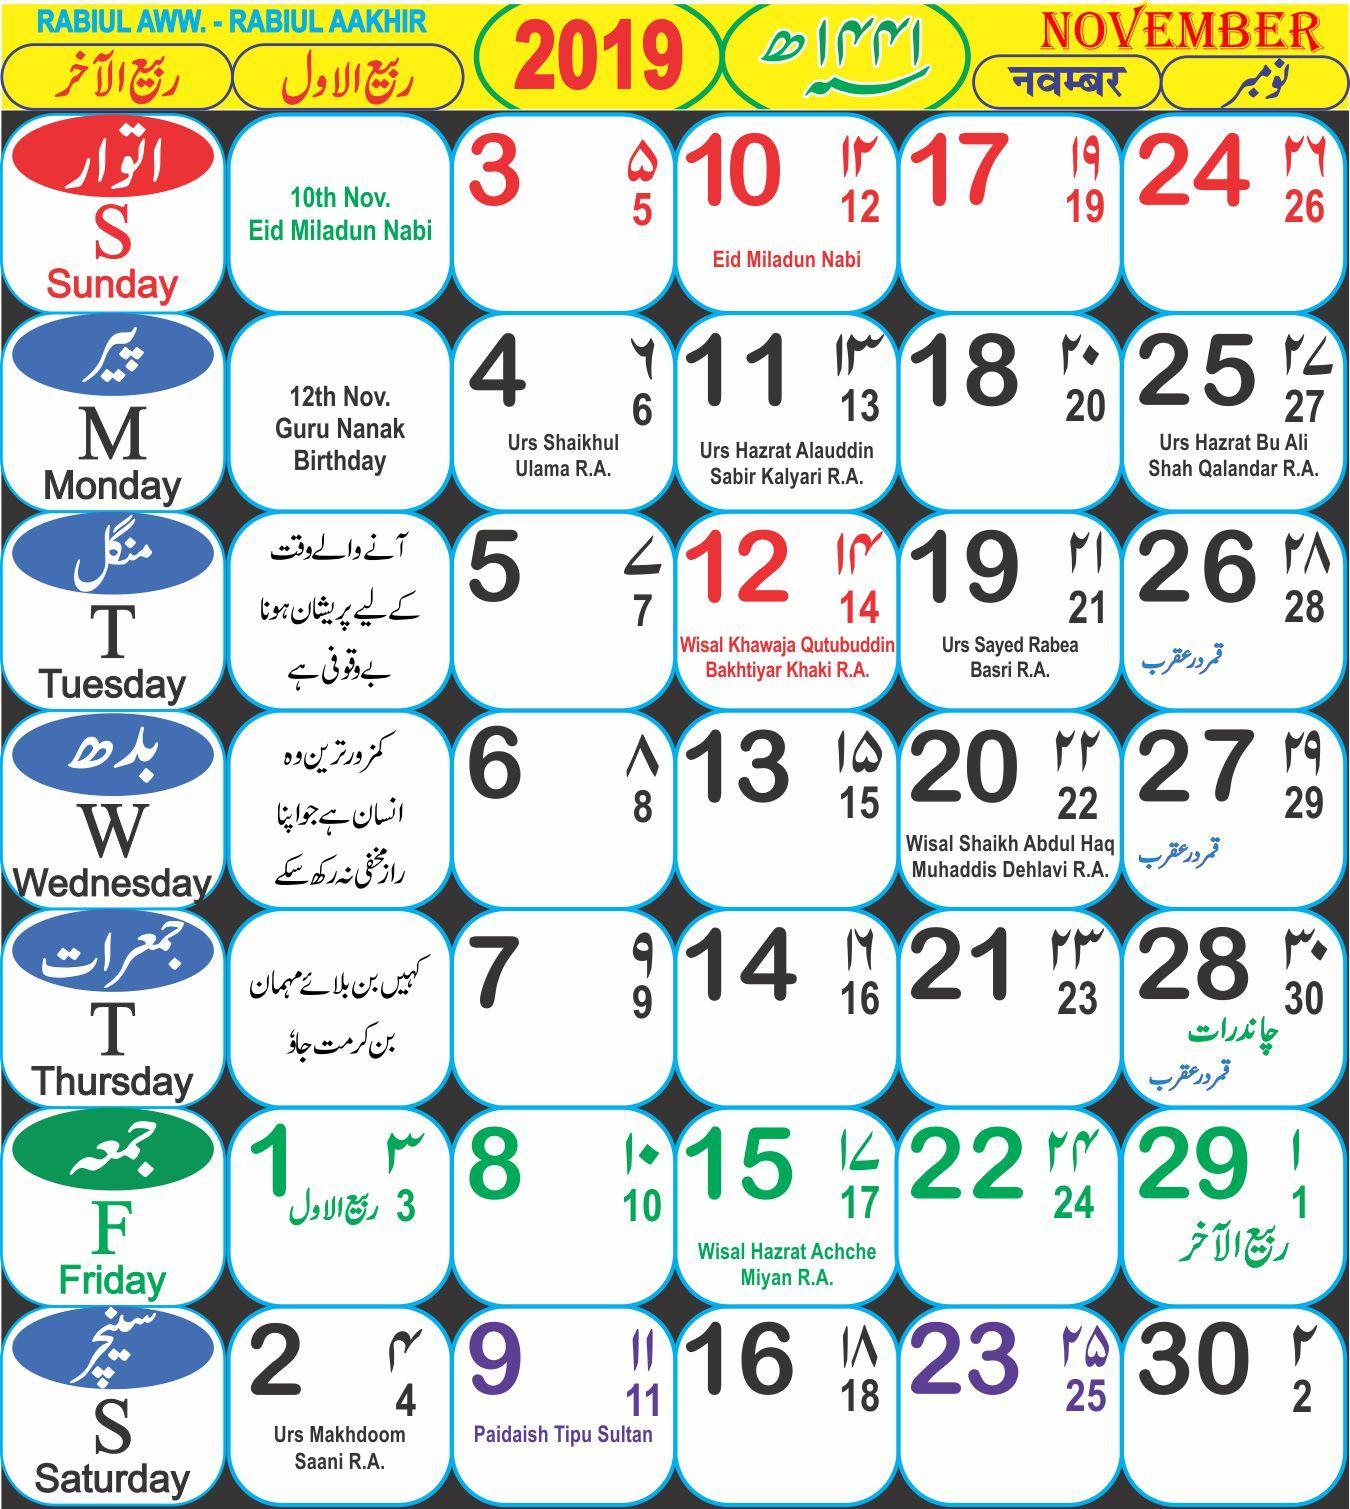 Месяцы года по мусульманский. Исламский календарь. Месяцы по мусульманскому календарю. Календарь Ислама. Название месяцев по мусульманскому календарю.